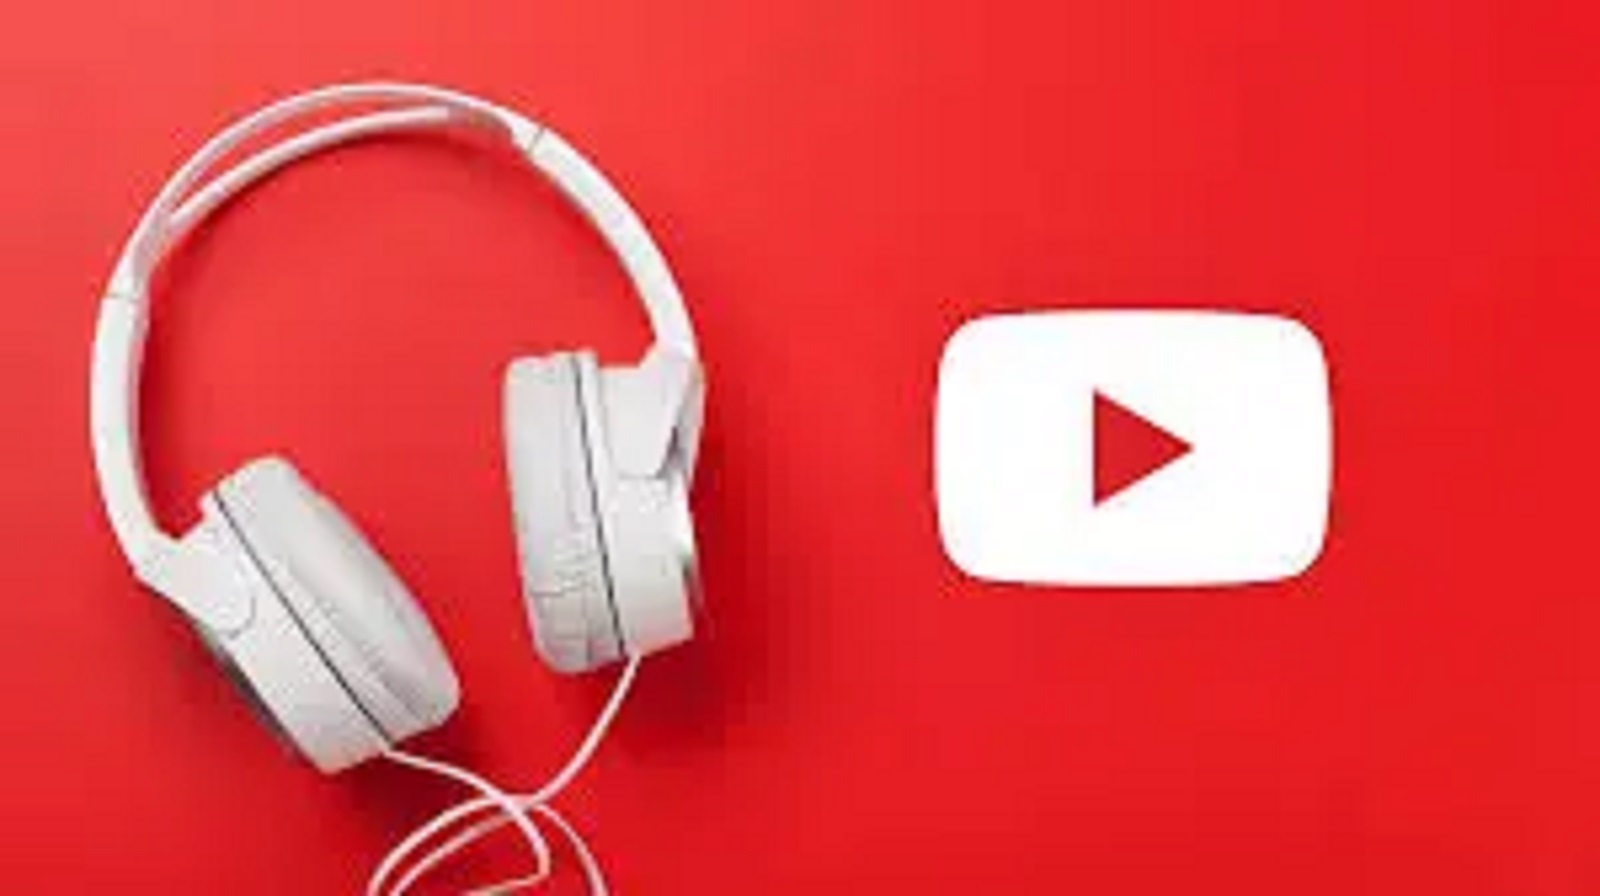 Link VidMate Versi Asli, Download Lagu MP3 Youtube Lebih Mudah dan Cepat 